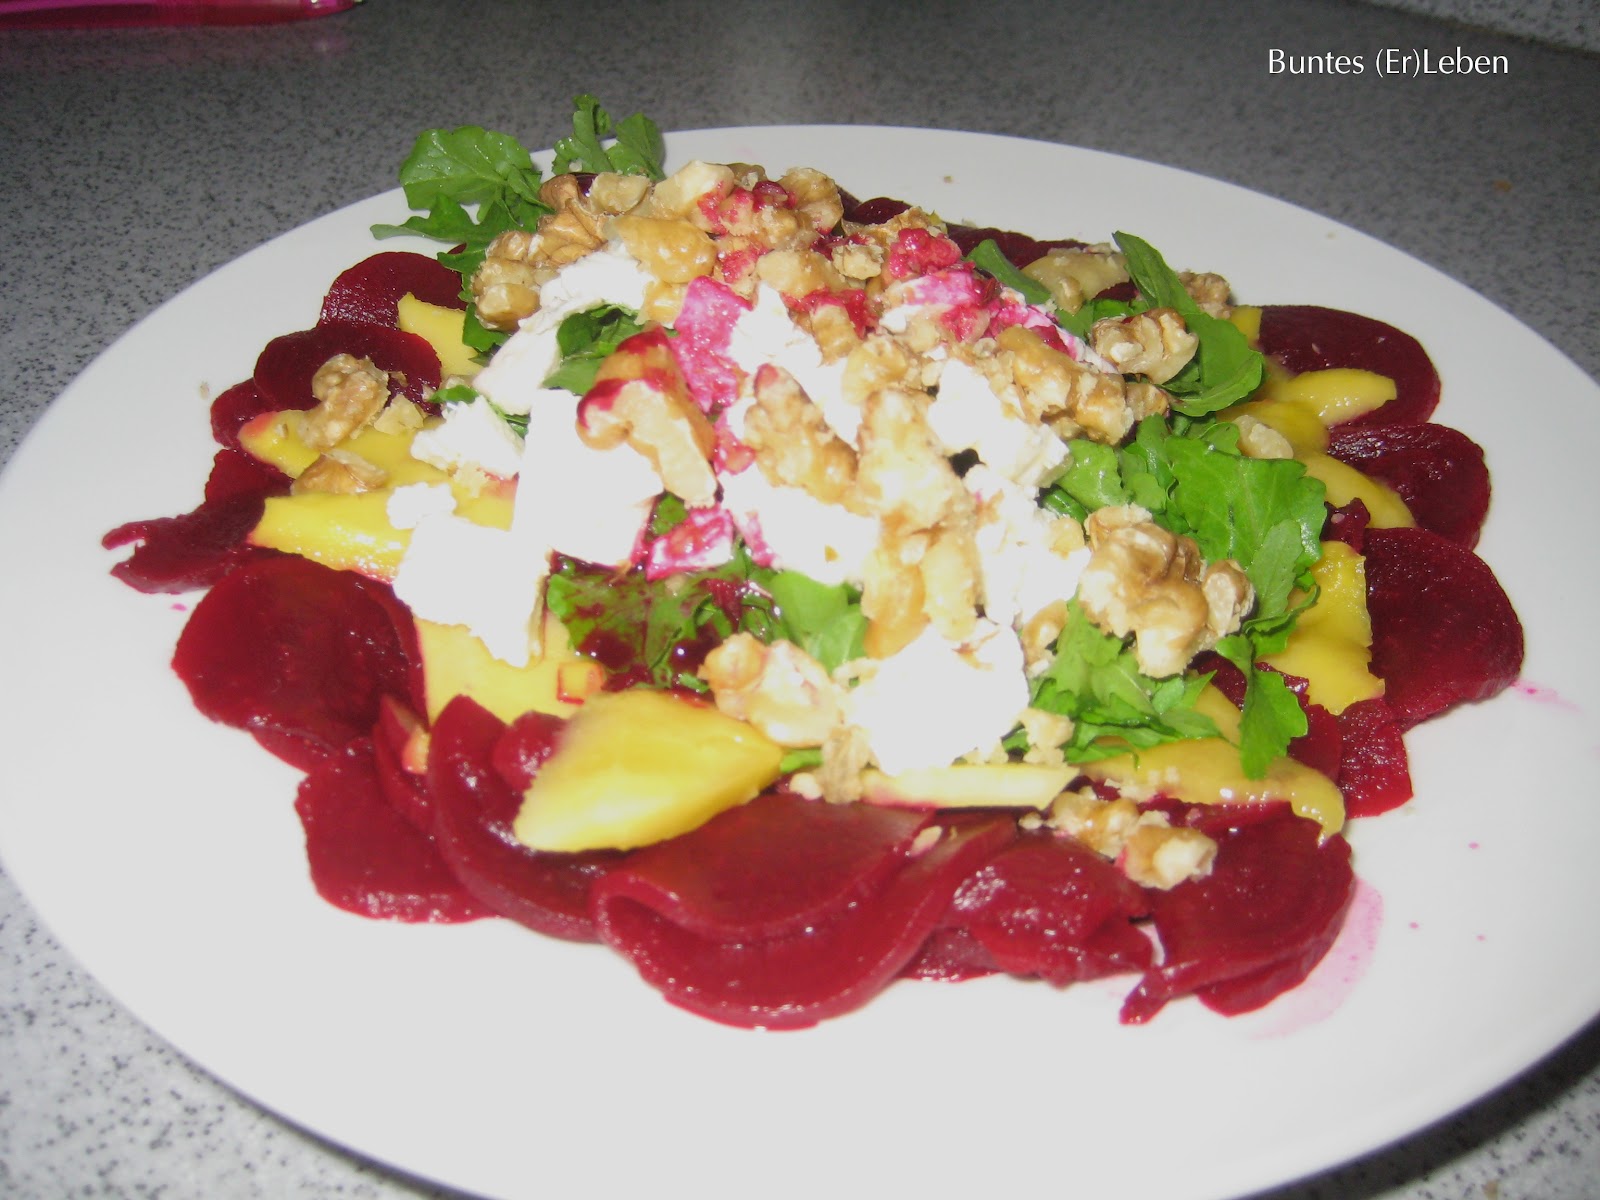 Buntes (Er)Leben: [Rezept] Ein Traum von Rote-Rüben-Salat